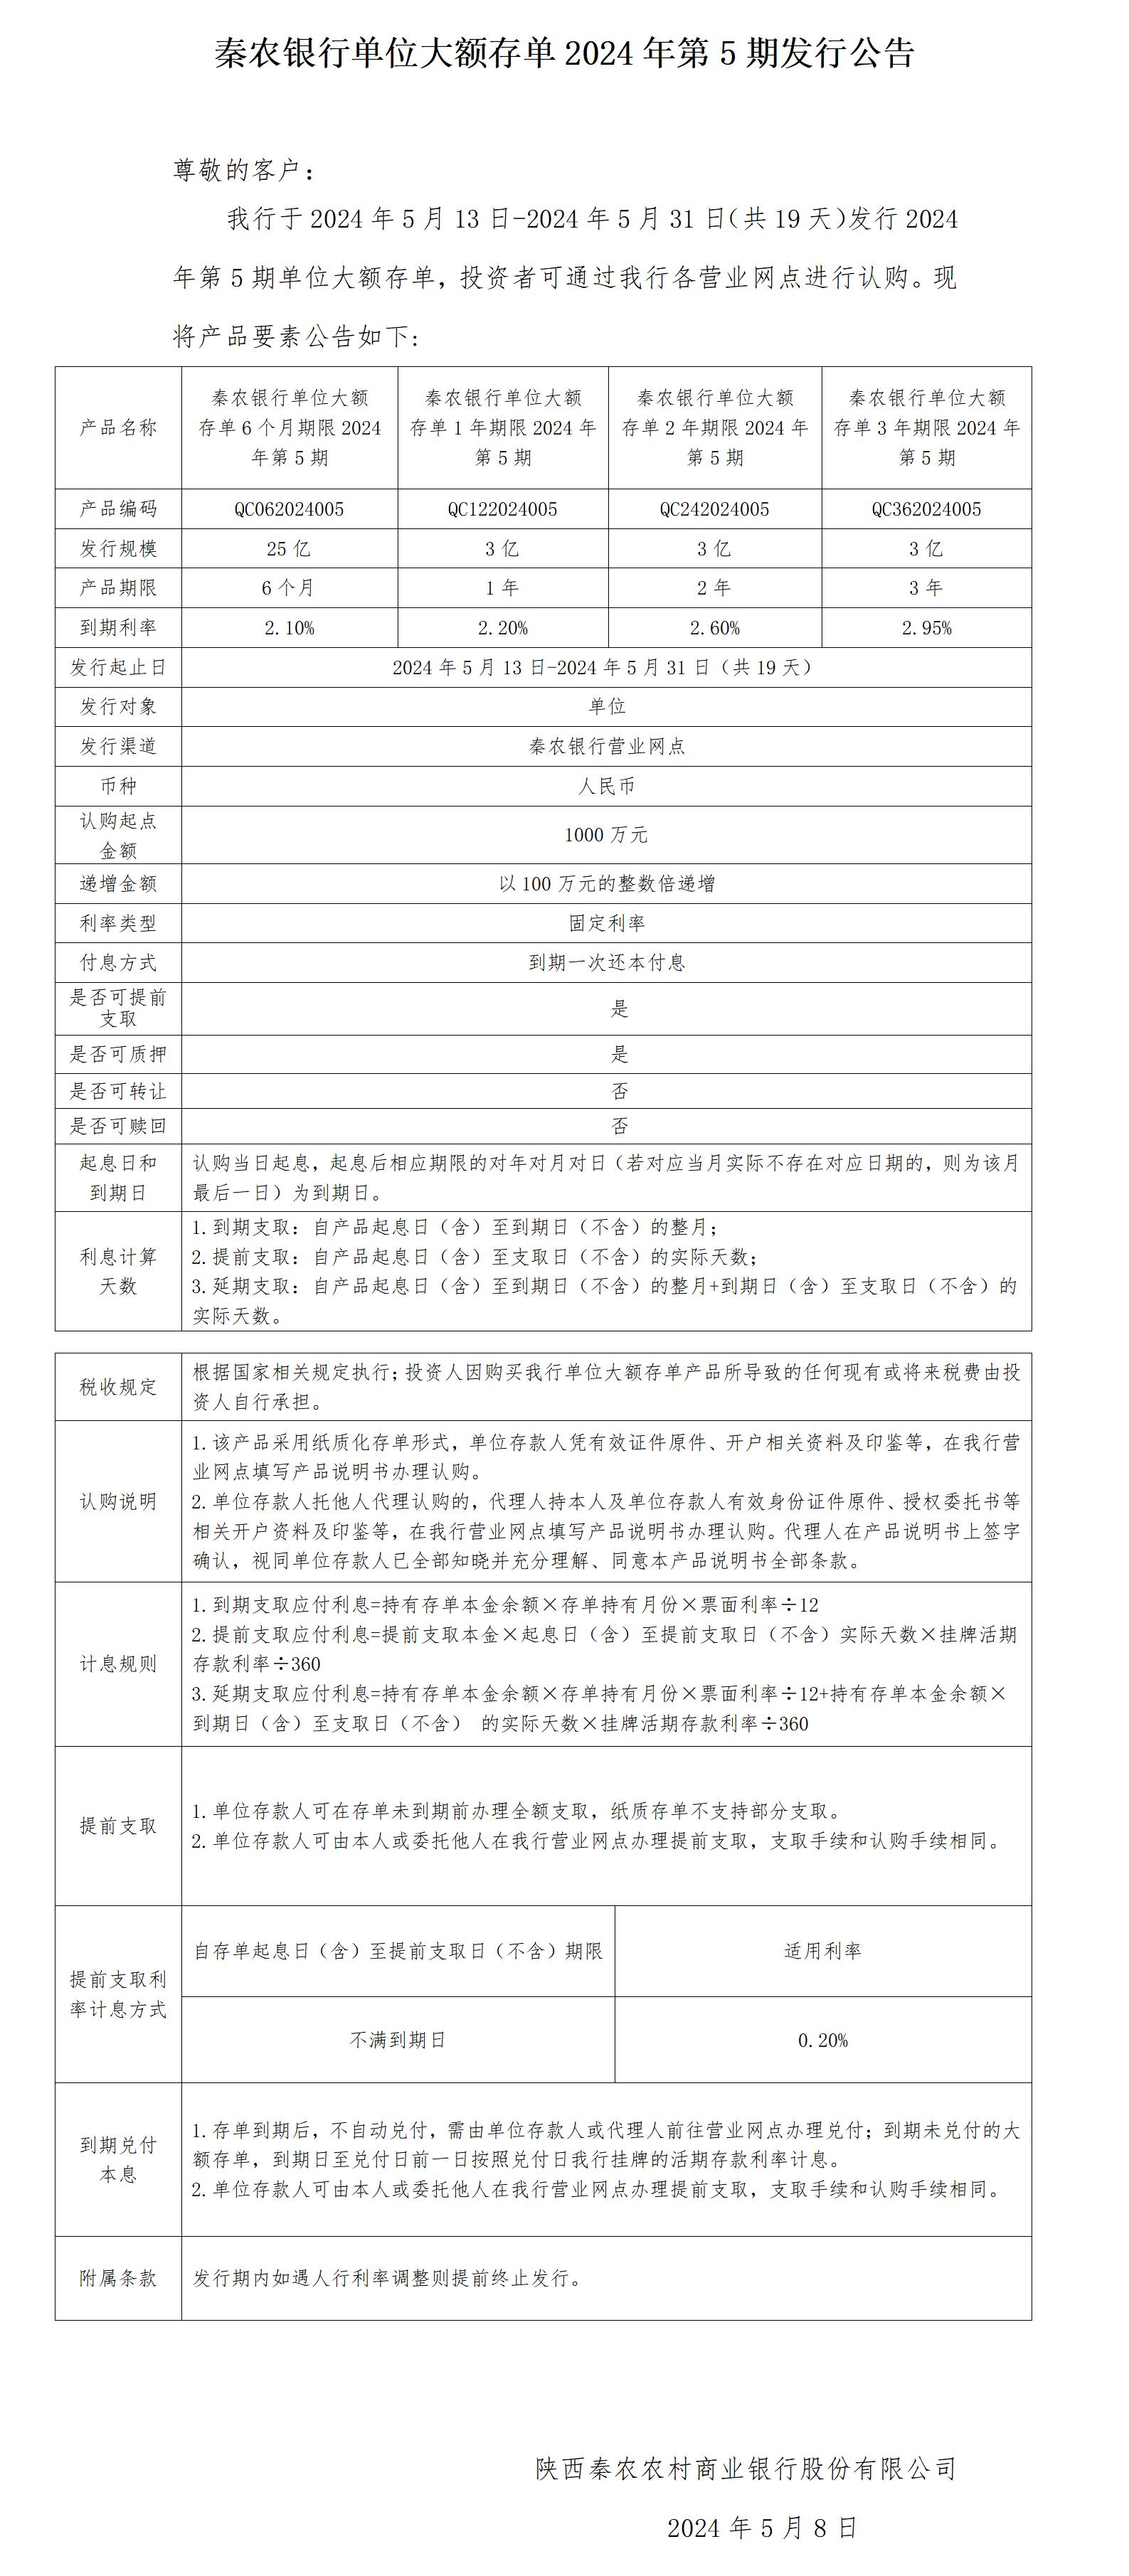 秦农银行单位大额存单2024年第4期发行公告2024.5.8_01(1).jpg